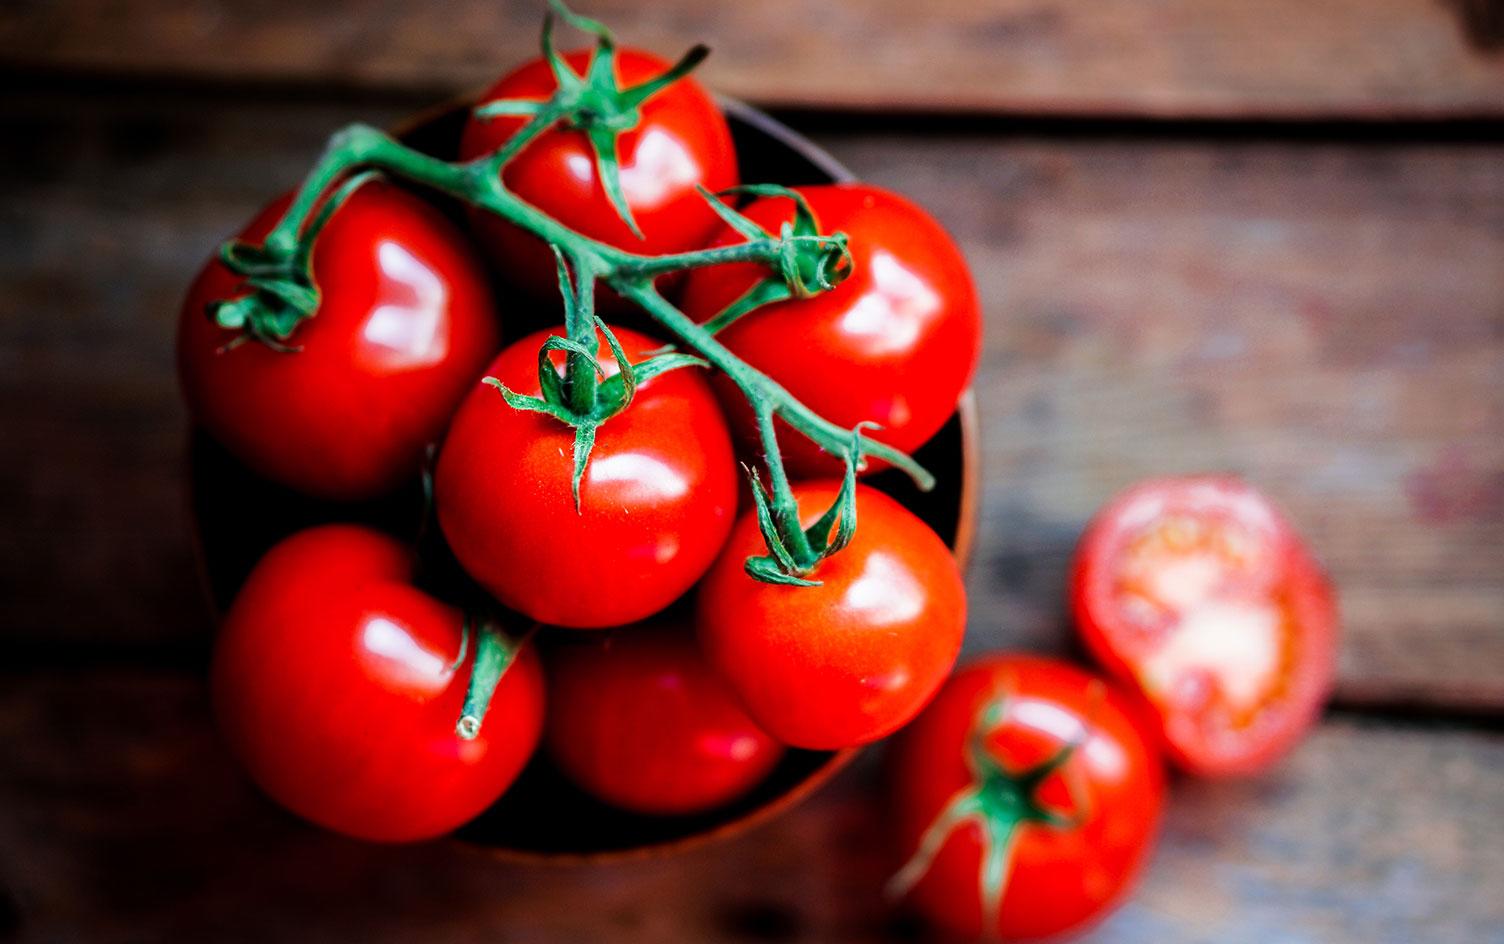 6-nguyen-lieu-ingredient-of-the-week-tomatoes-1516691136-940-width1504height944.jpg